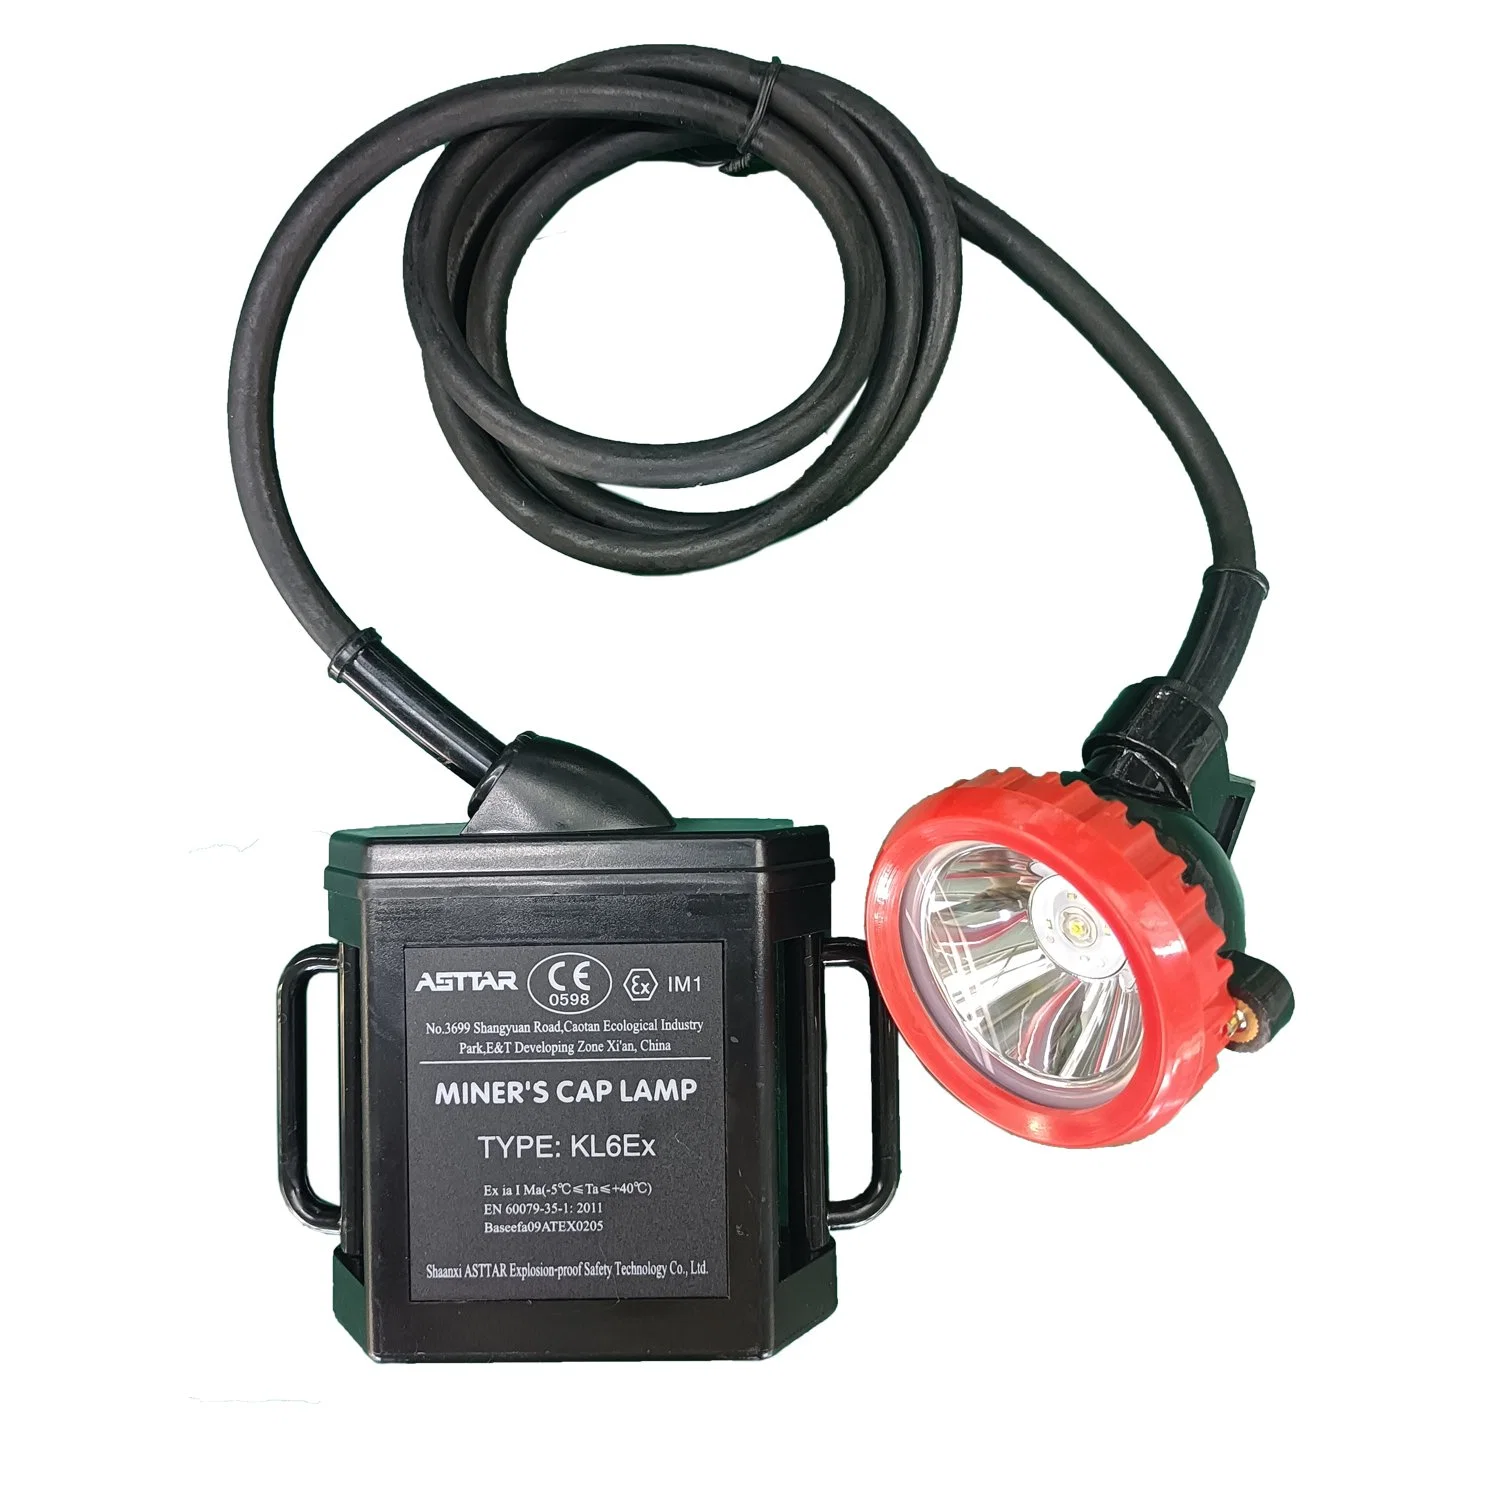 Linterna frontal Asttar LED con certificación ATEX, lámpara de minería, lámpara de tapa LED Miner